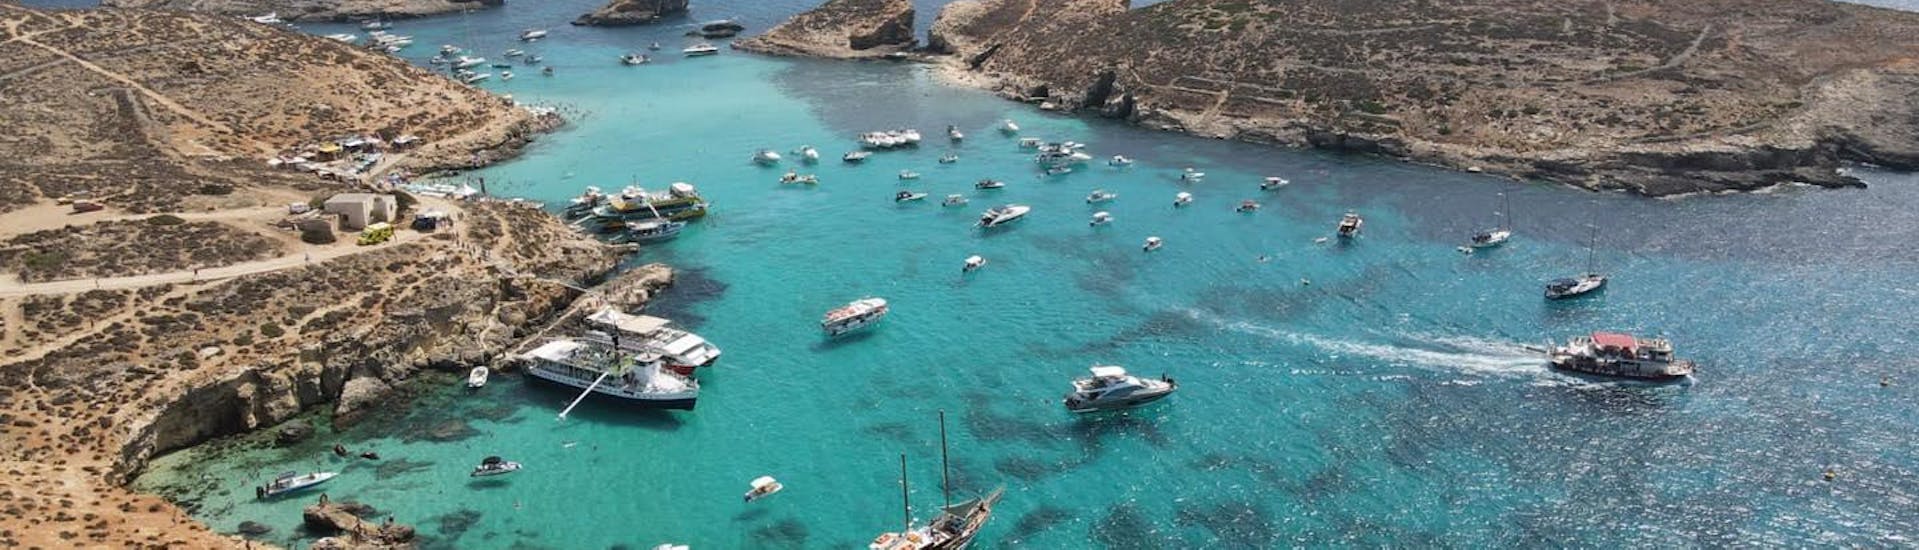 De kustlijn van Malta waar Luzzu Cruises boottochten organiseert.